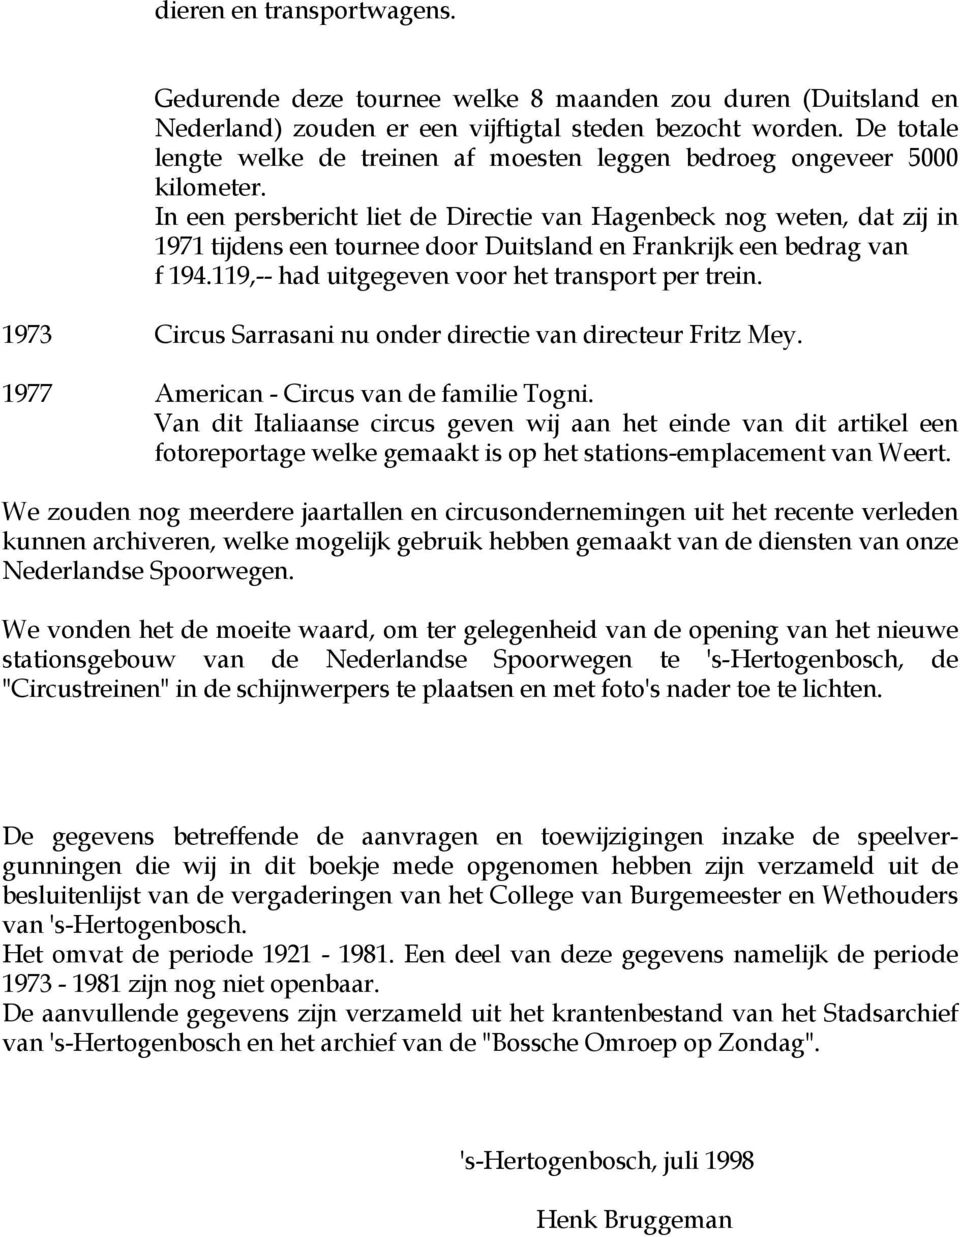 In een persbericht liet de Directie van Hagenbeck nog weten, dat zij in 1971 tijdens een tournee door Duitsland en Frankrijk een bedrag van f 194.119,-- had uitgegeven voor het transport per trein.